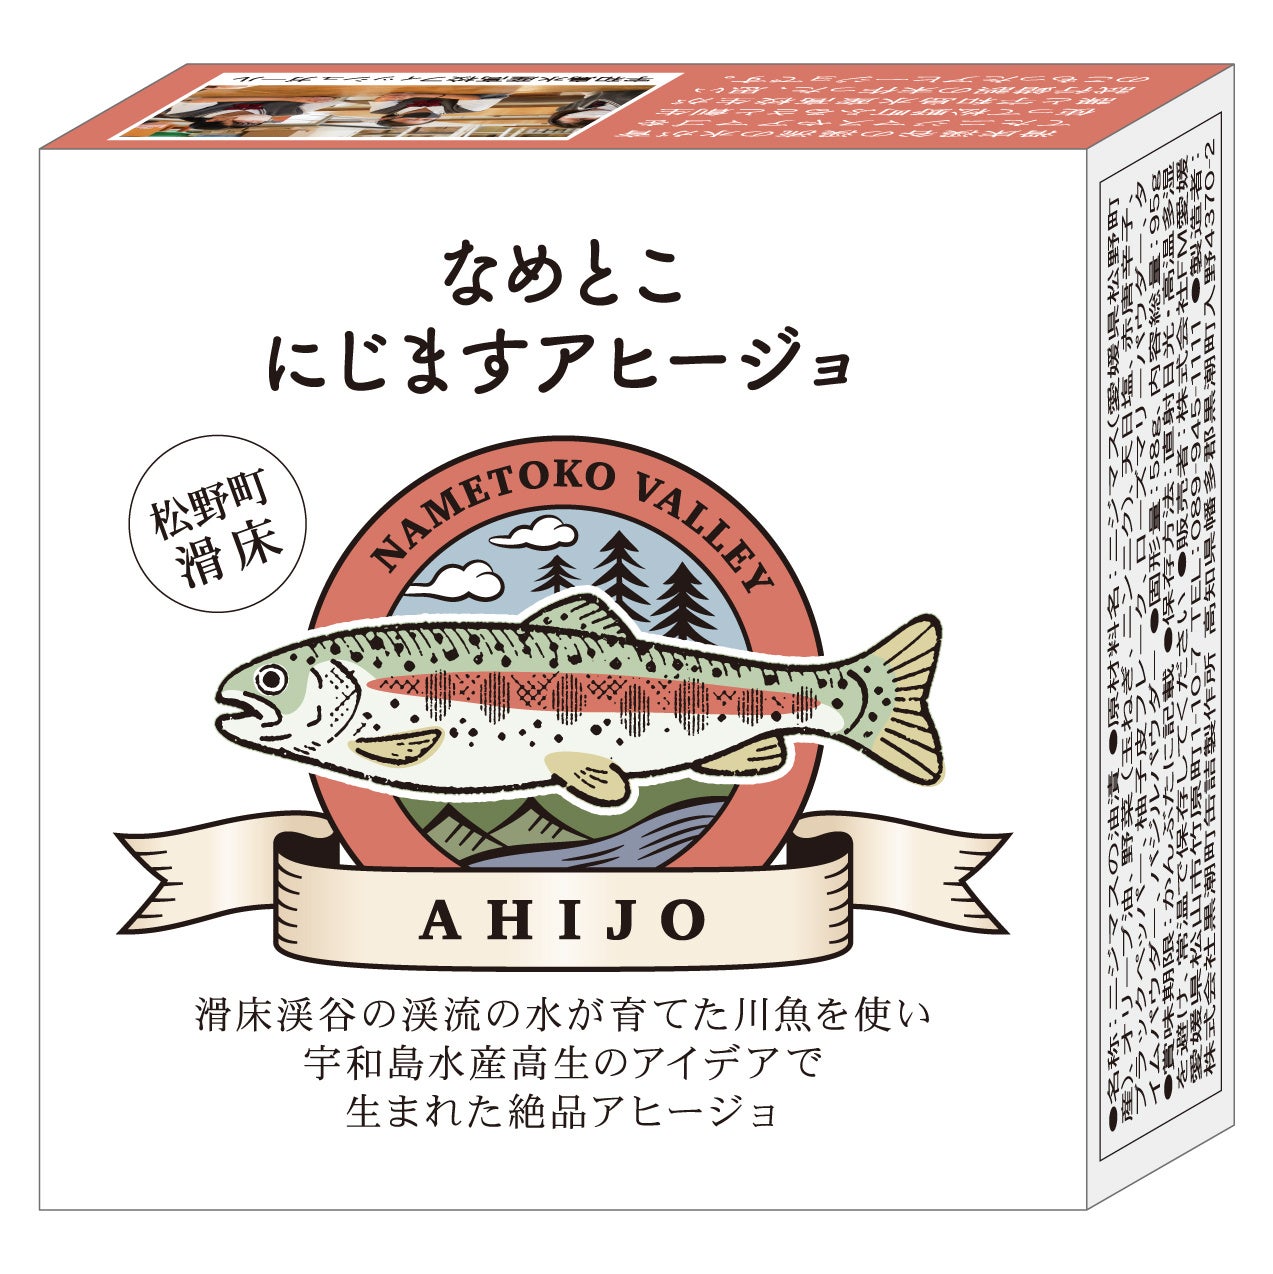 名古屋市の戦国観光プロモーションで 市内人気店による“家康コラボグルメ”を期間限定販売